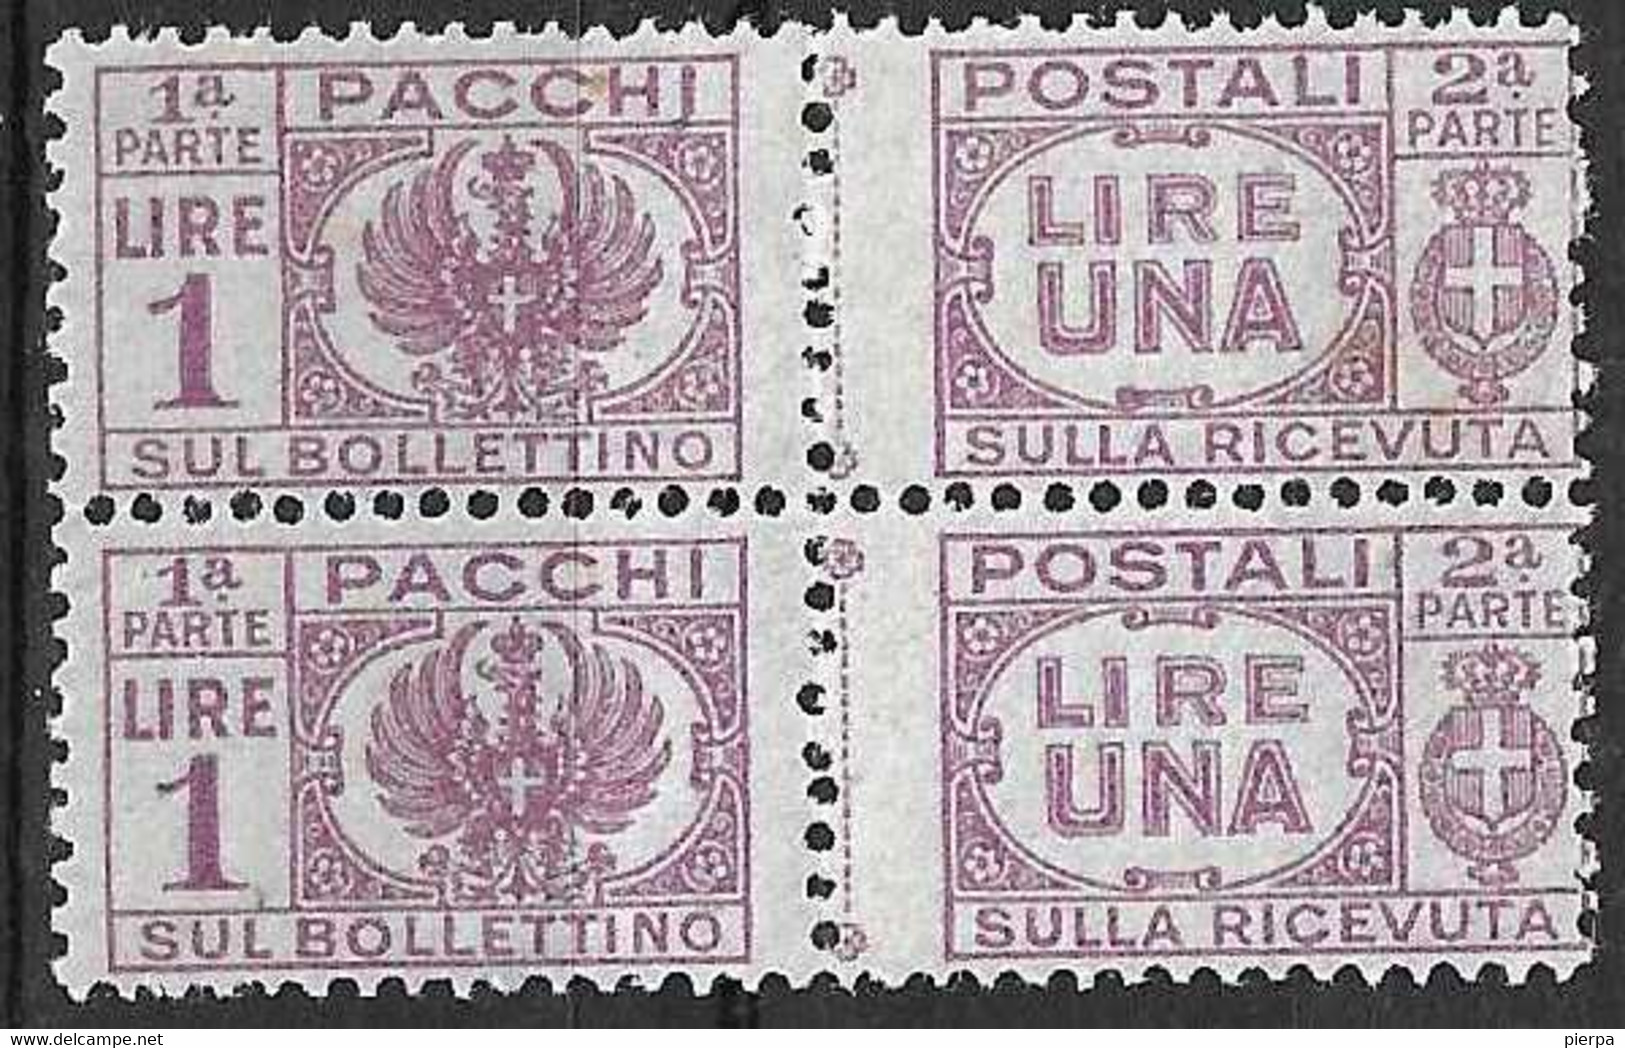 ITALIA - 1946 - PACCHI POSTALI -COPPIA DEL LIRE 1 - FIL CORONA - NUOVO MNH**(SS 60 - YVERT 46 - MICHEL 60) - Paketmarken